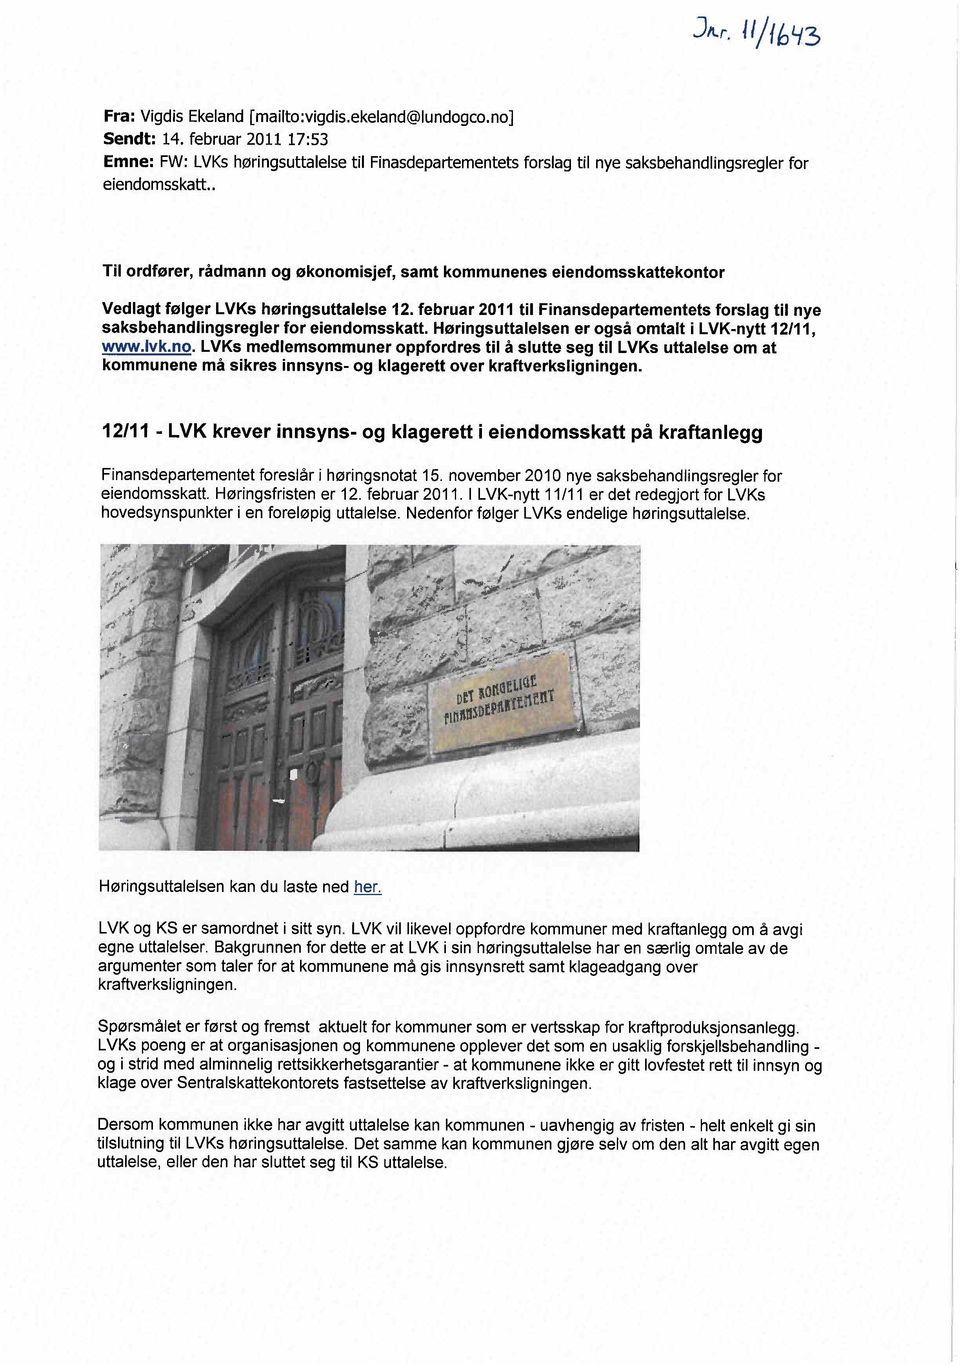 . Til ordfører, rådmann og økonomisjef, samt kommunenes eiendomsskattekontor Vedlagt følger LVKs høringsuttalelse 12.